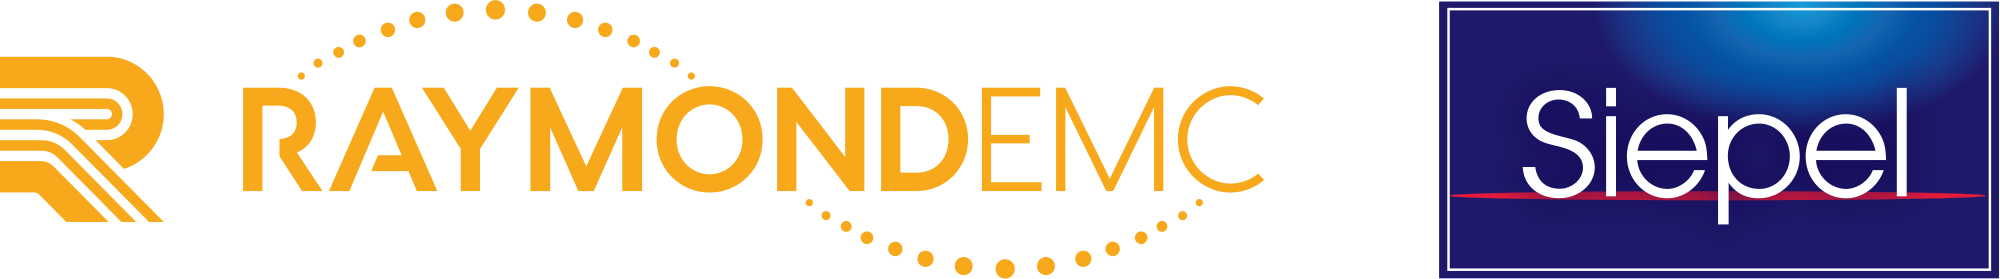 raymond emc and siepel logo